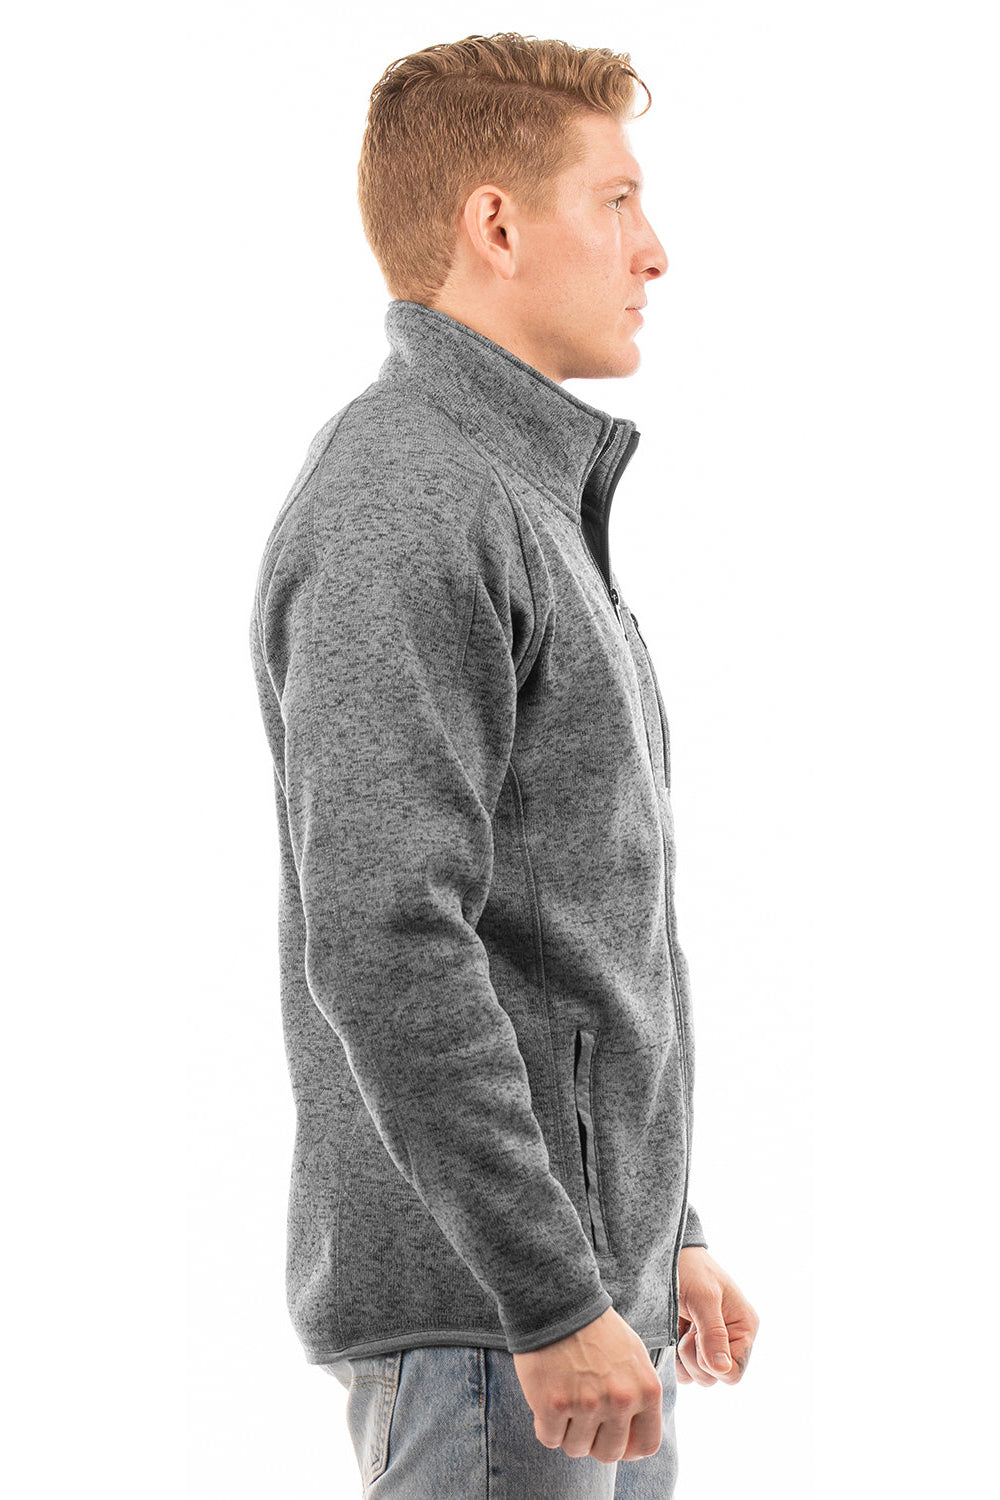 Burnside 3901 Mens Sweater Knit Full Zip Jacket Heather Charcoal Grey Model Side